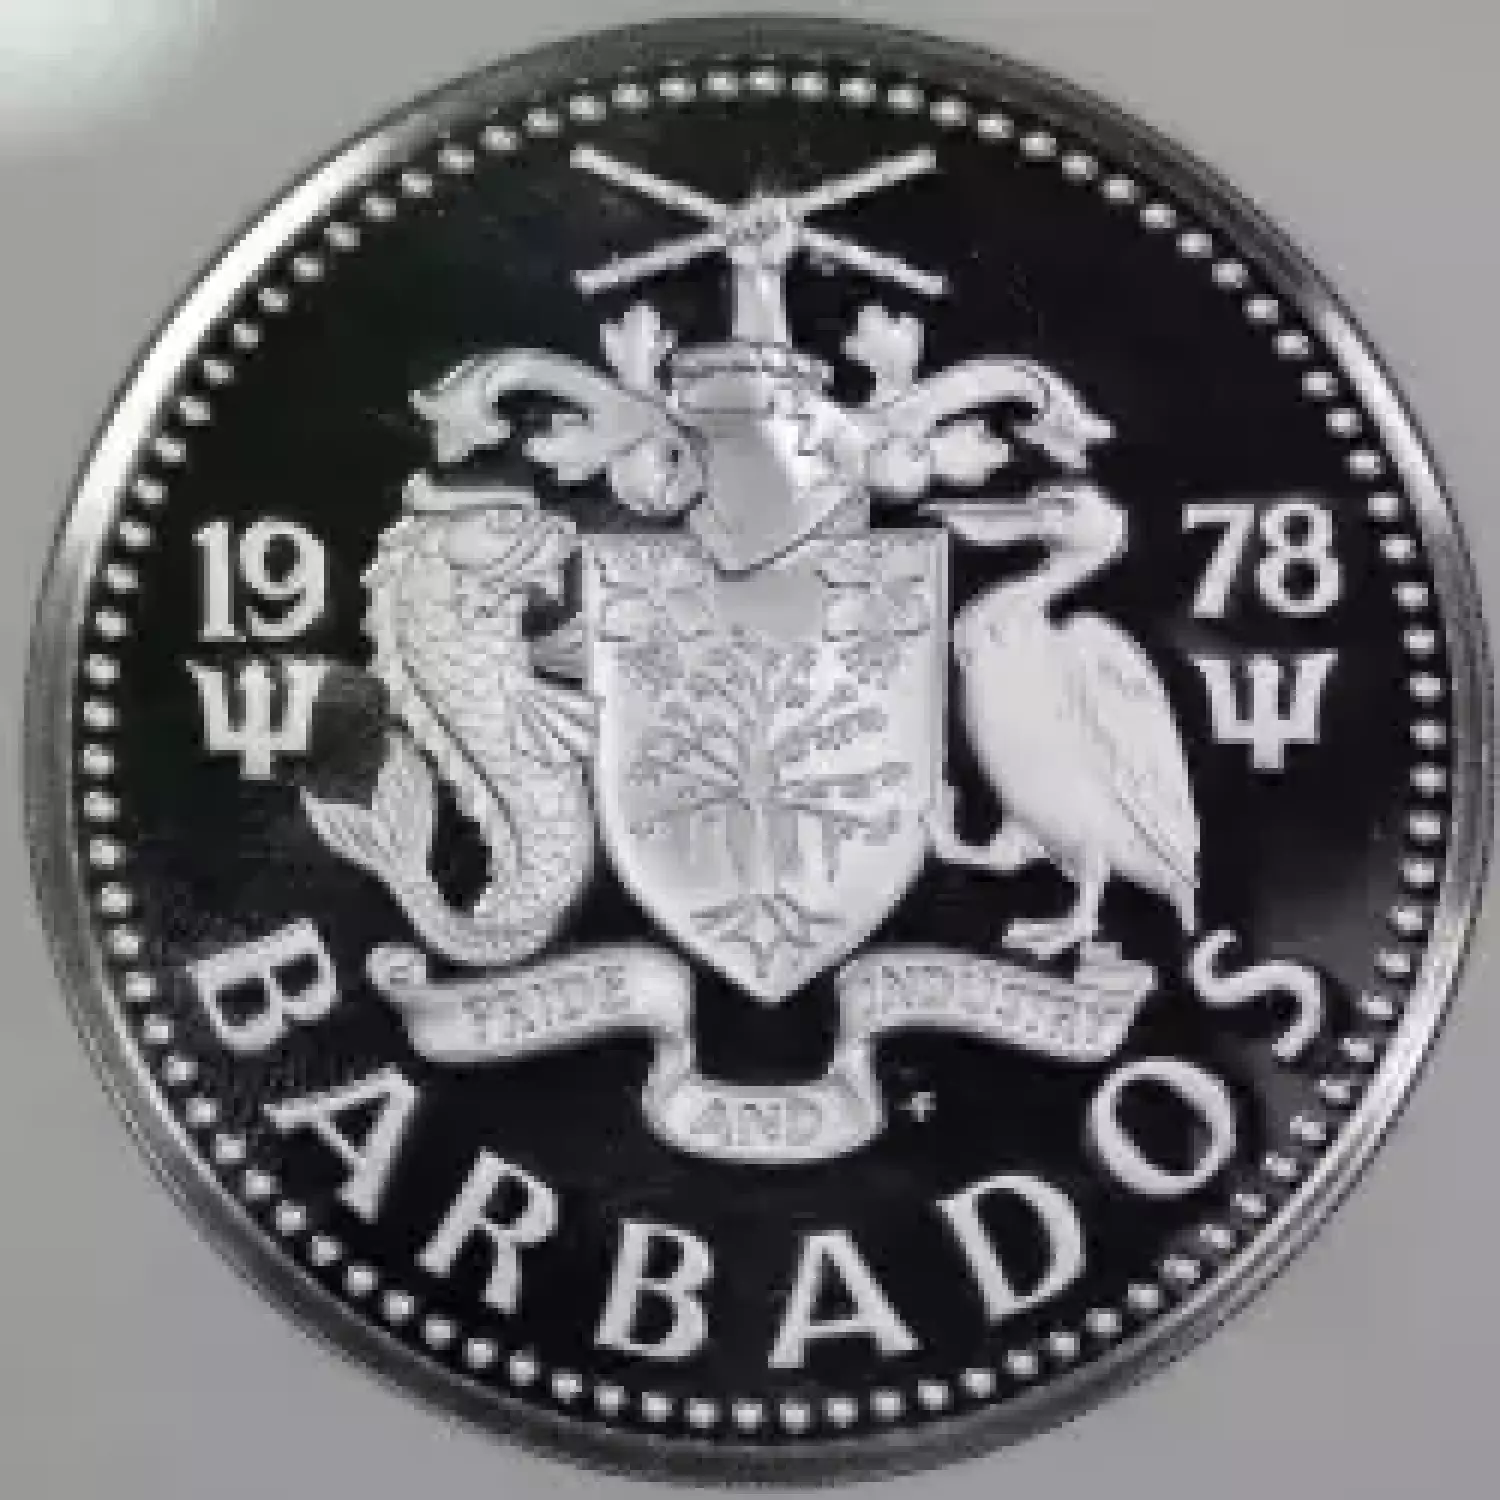 BARBADOS Silver 10 DOLLARS (3)